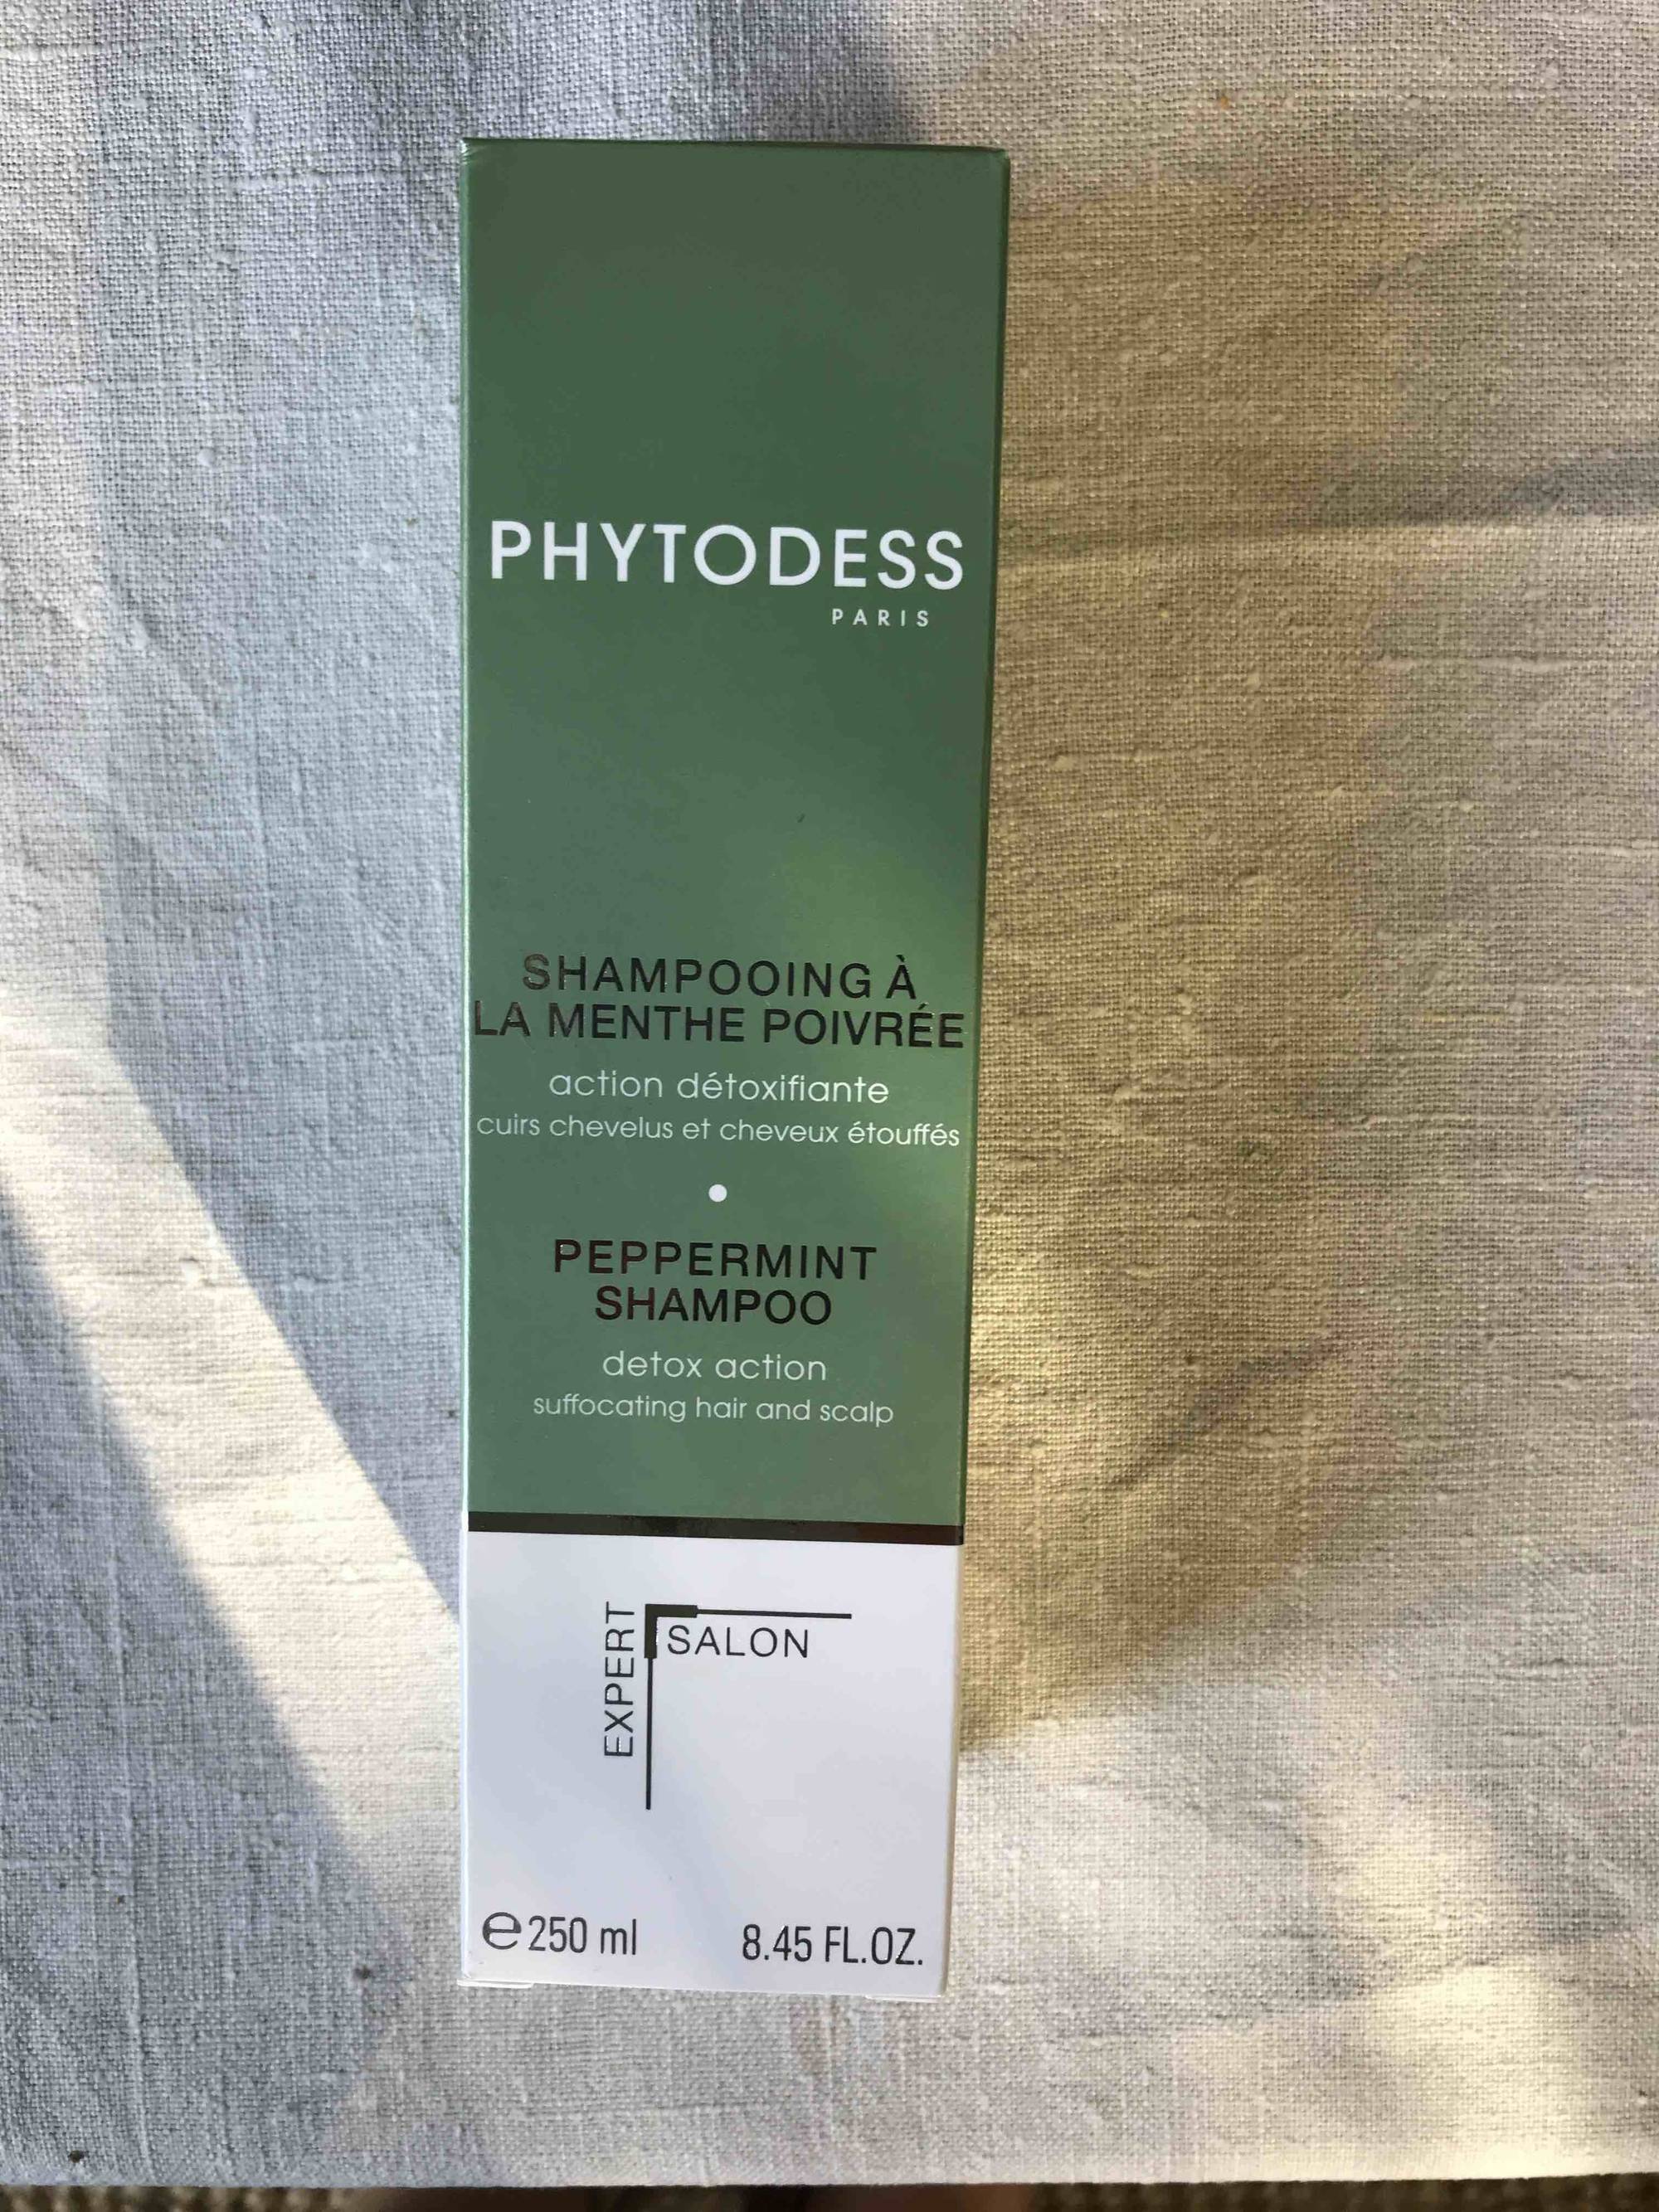 PHYTODESS - Action détoxifiante - Shampooing à la menthe poivrée